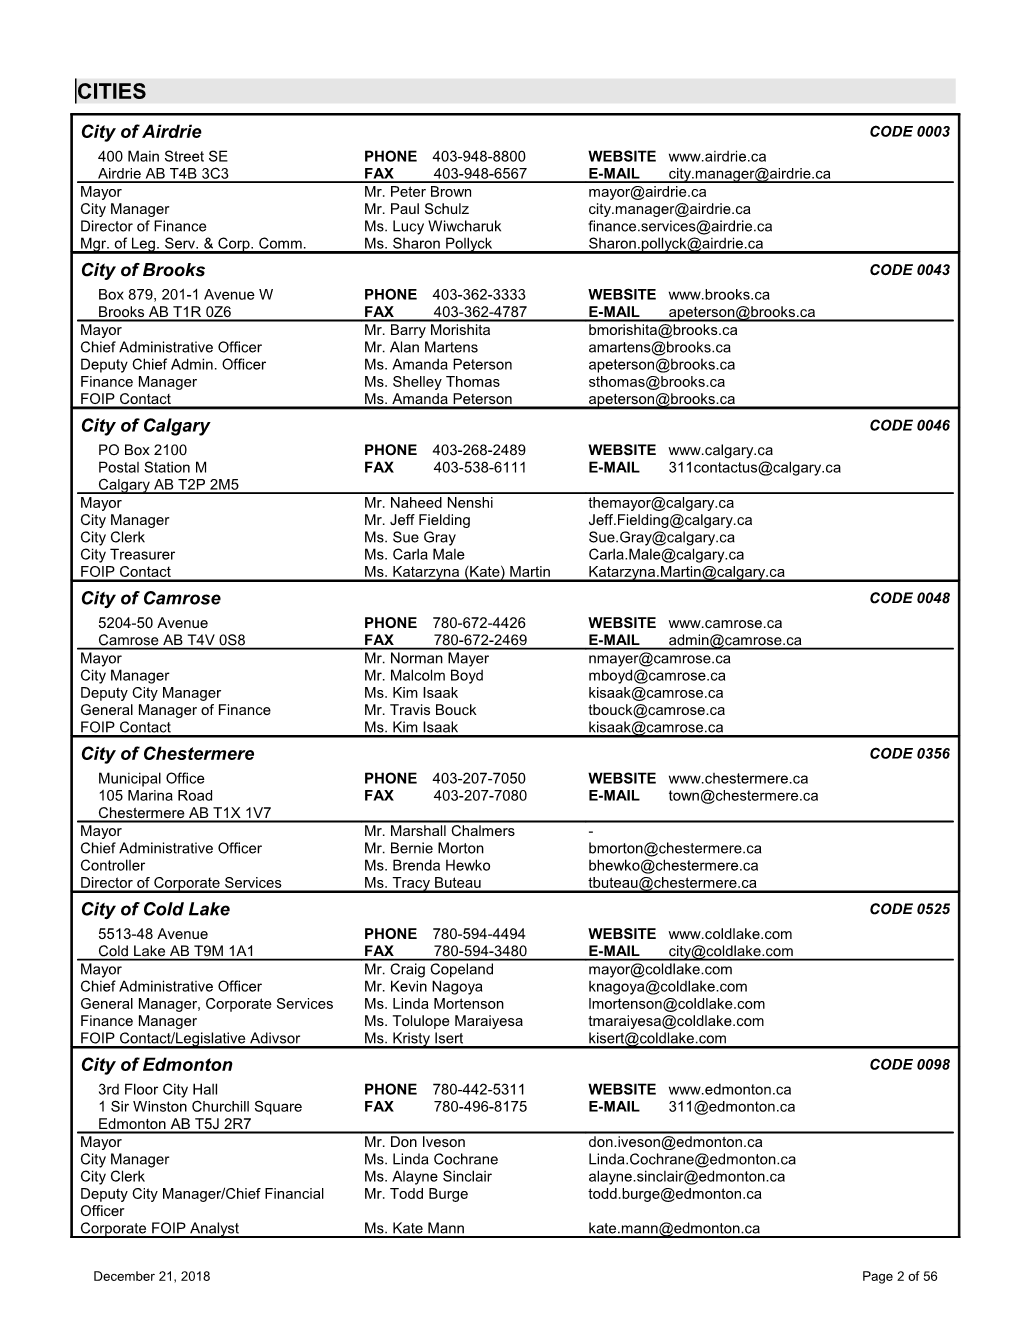 2018 Municipal Officials Directory